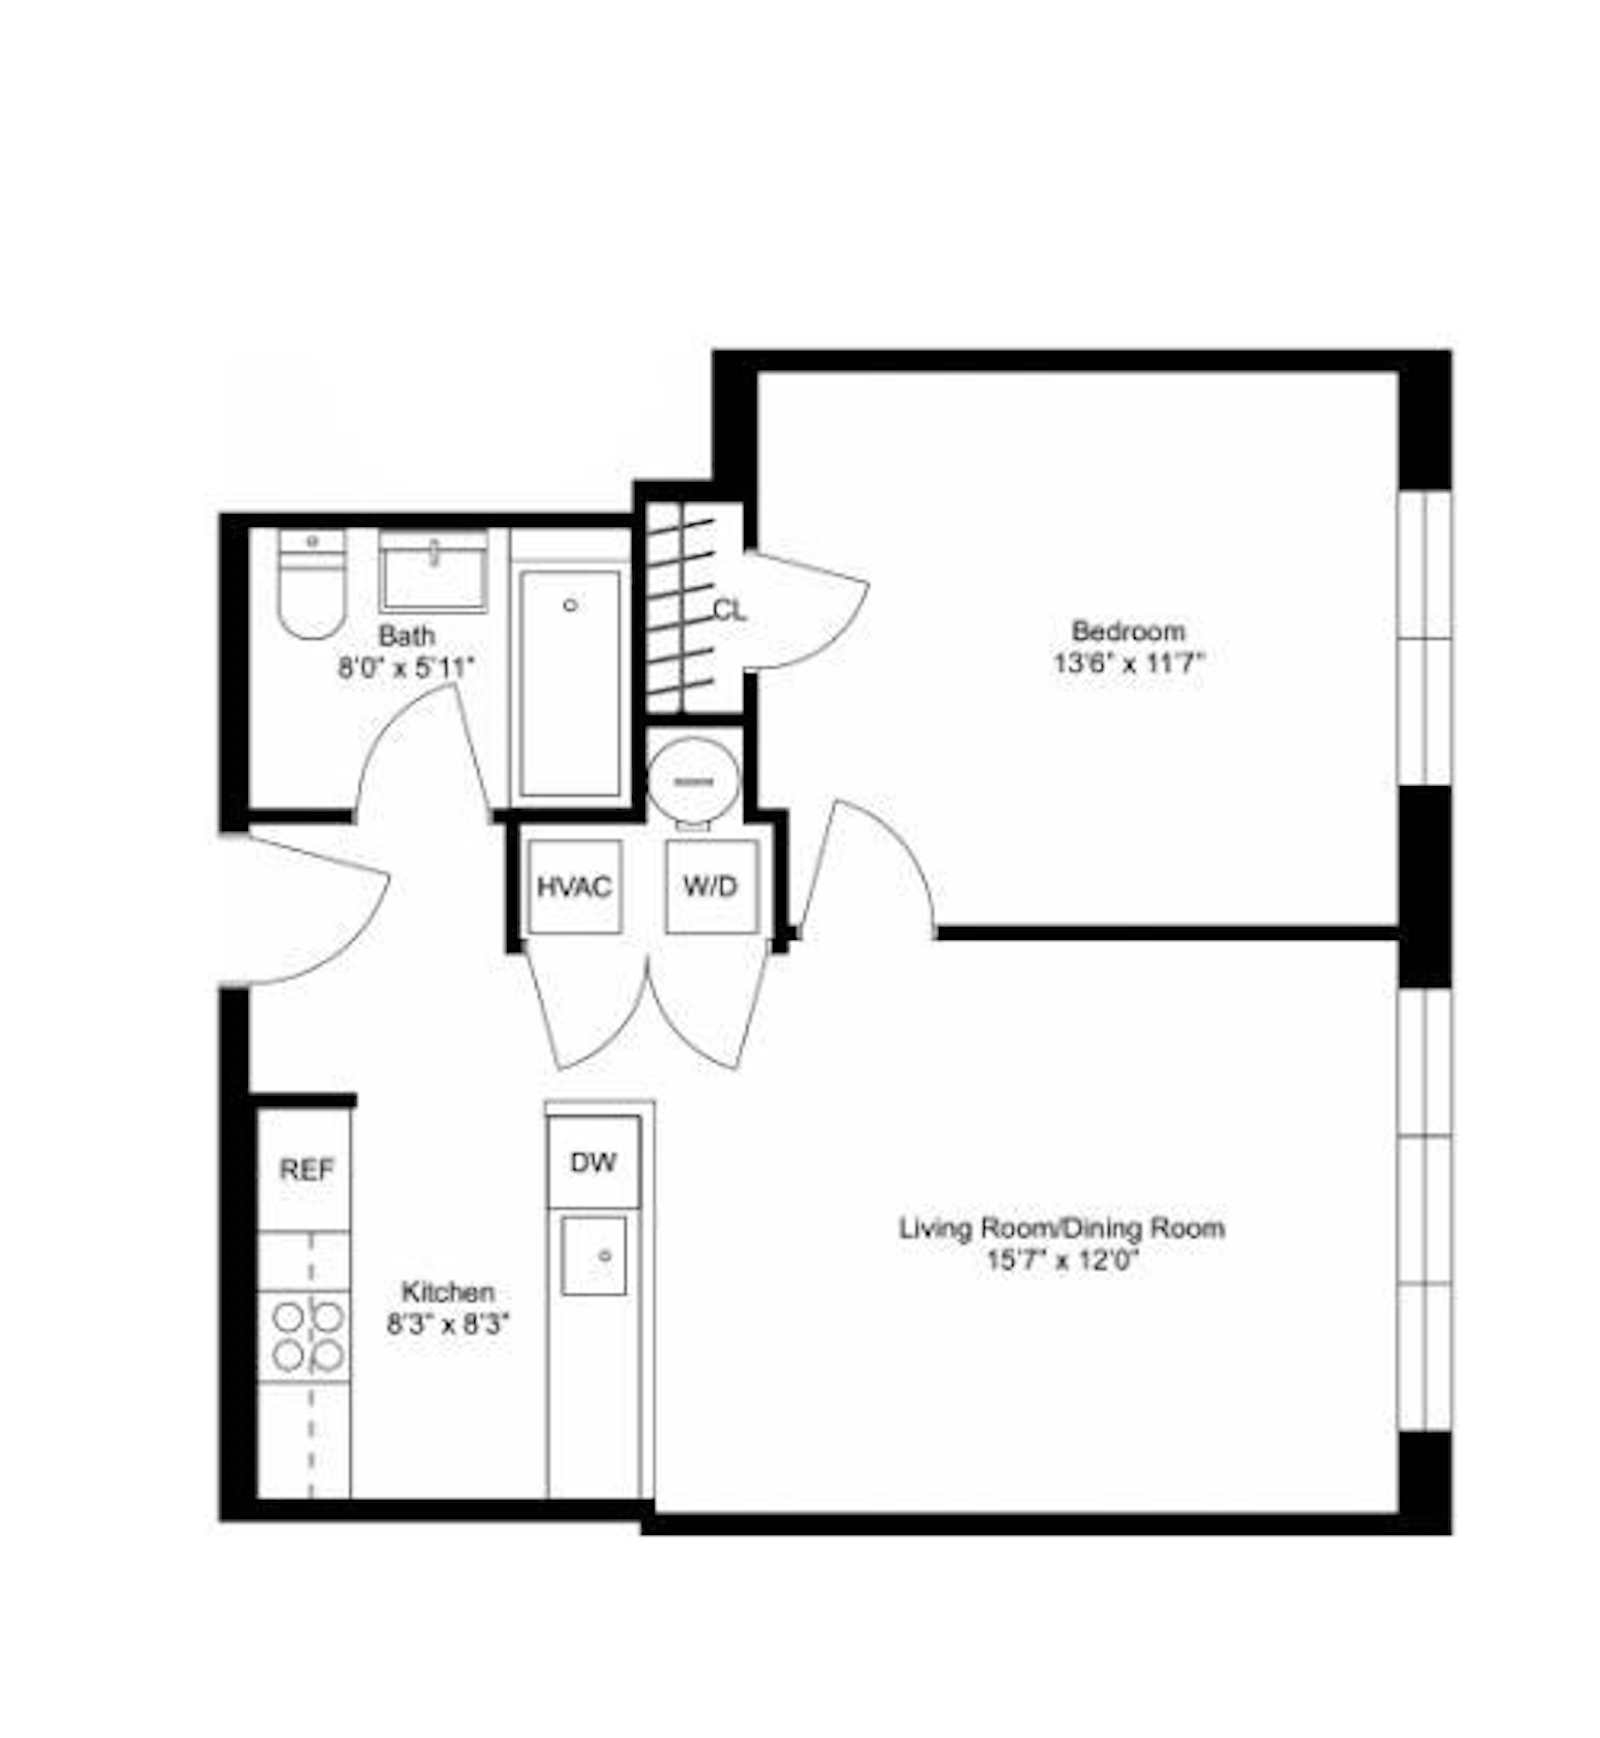 Floorplan for 627 Dekalb Ave